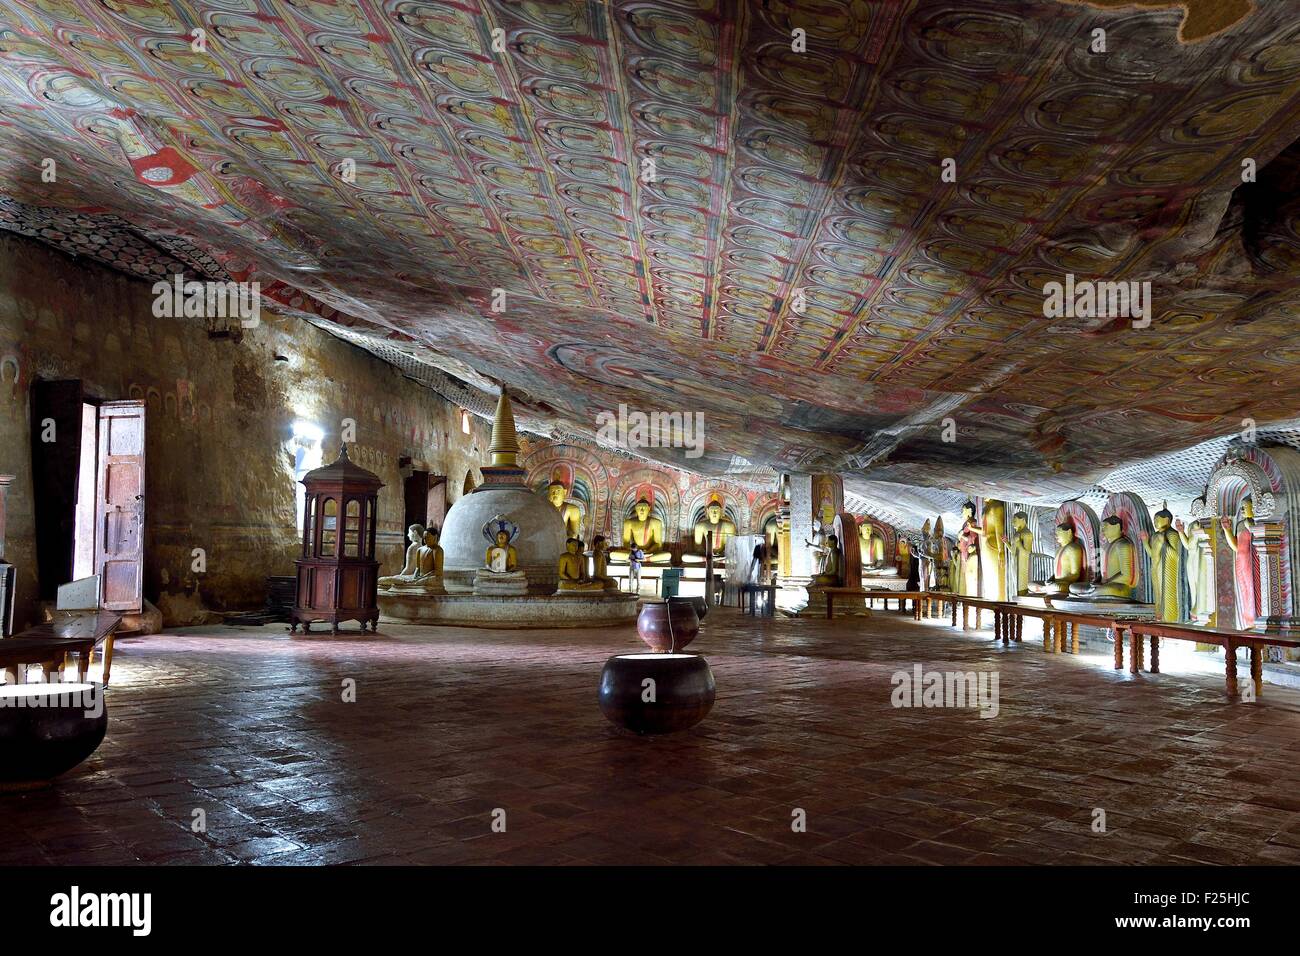 Central Province, Matale-Distrikt, Dambulla, Sri Lanka, Royal Rock Temple auch genannt Ran Giri (Goldener Felsen) von der UNESCO als Welterbe gelistet, Höhle 2 Maharaja Viharaya ist die größte Stockfoto